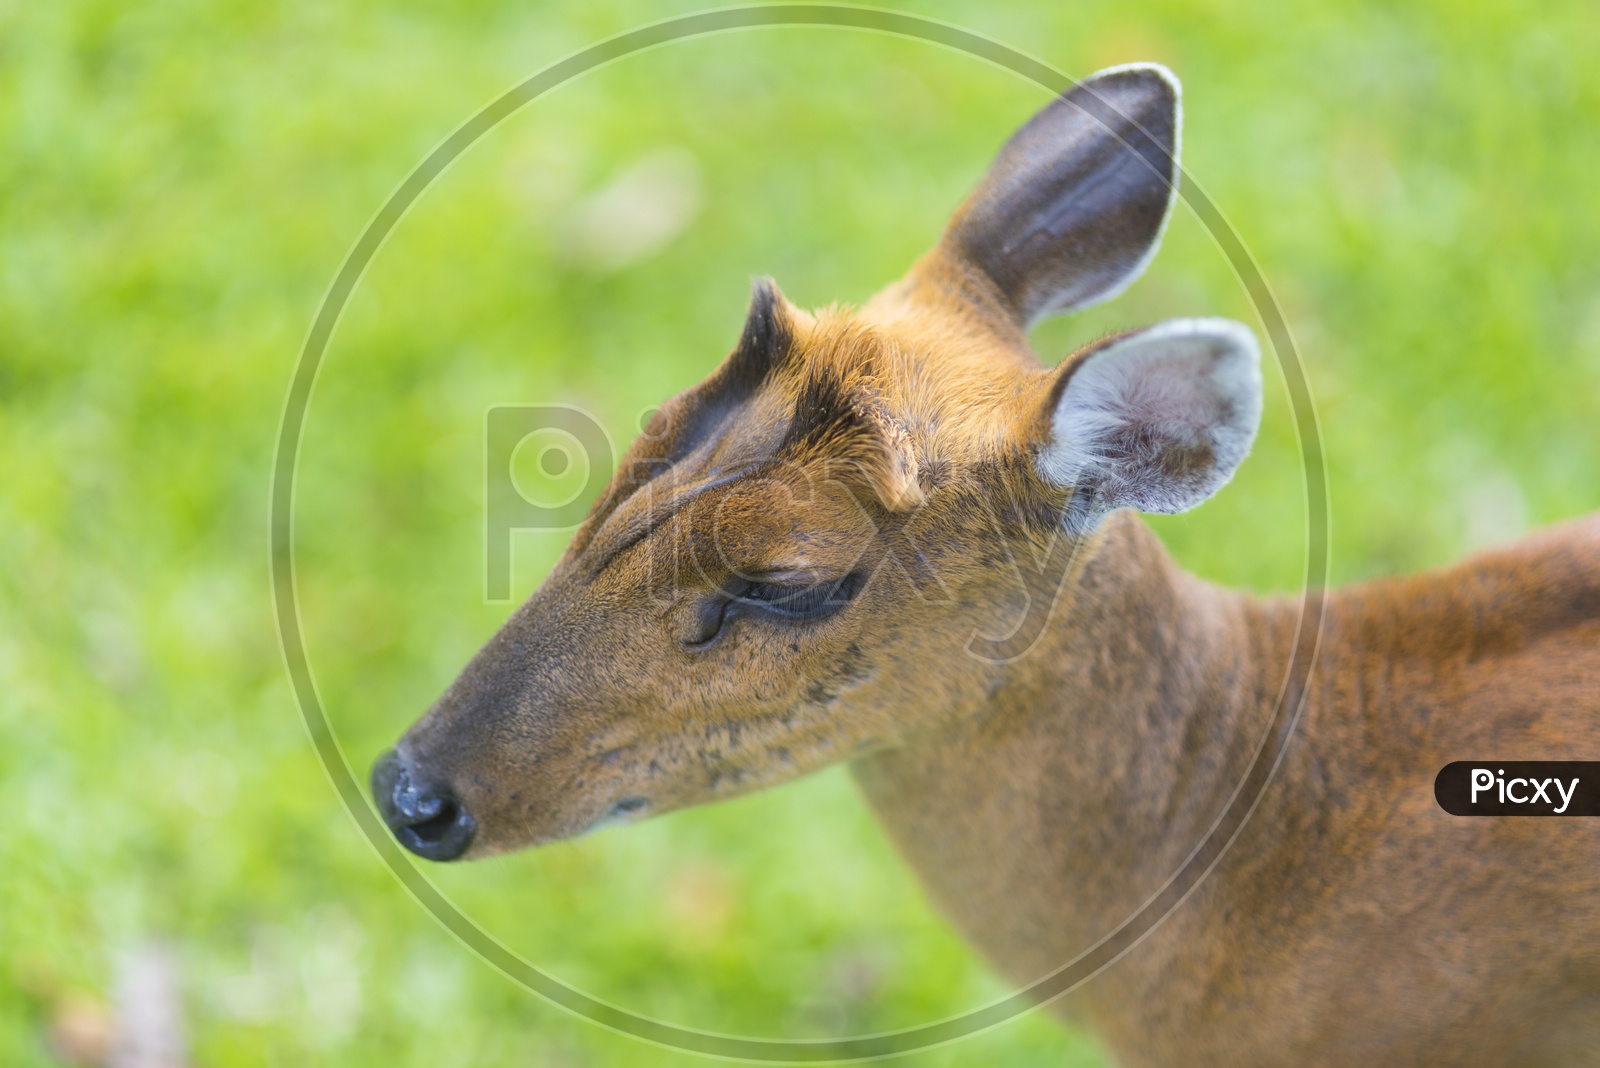 Head of fea's barking deer in Khao Yai National Park